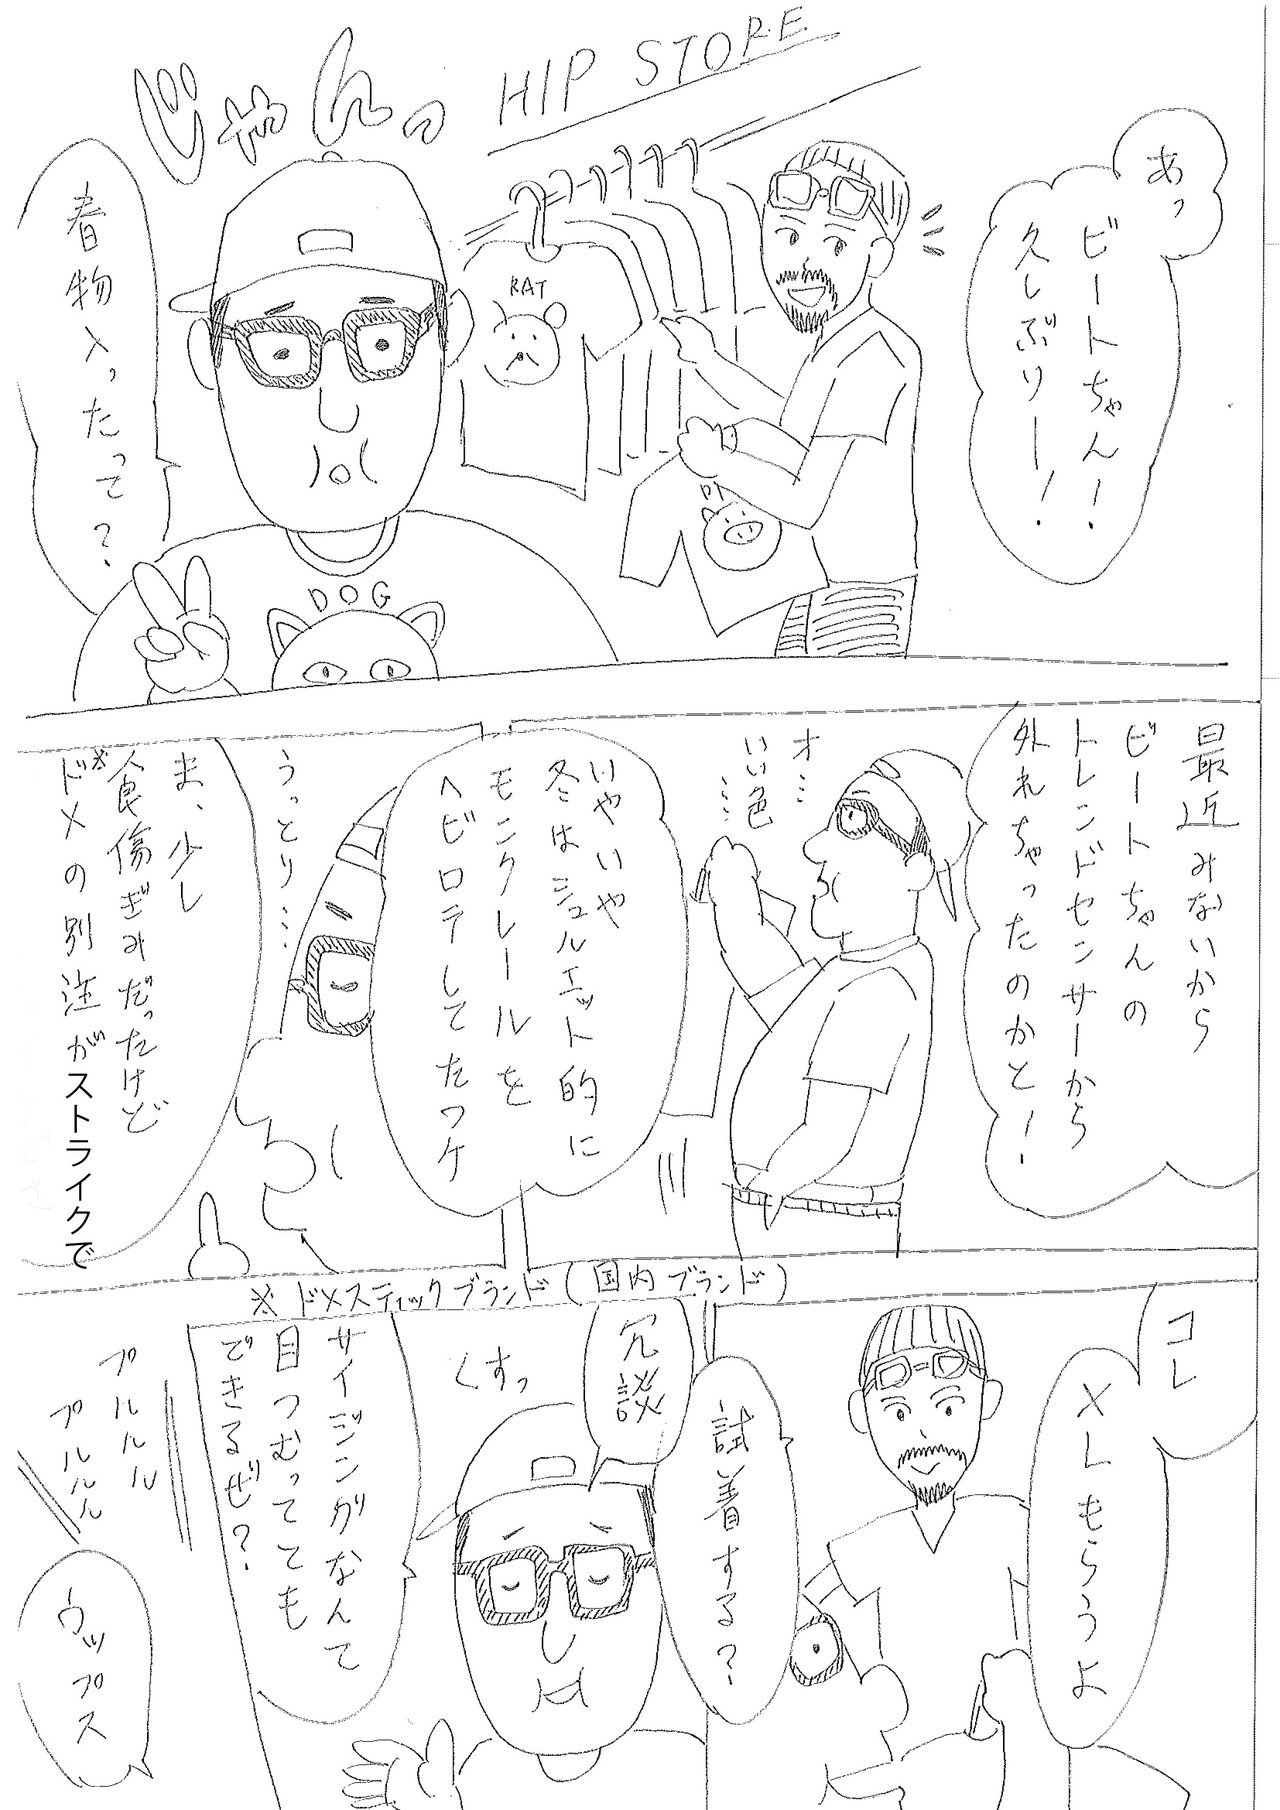 漫画 オシャレクソ野郎伝説 モテ服編 かっぴー 漫画家 Note